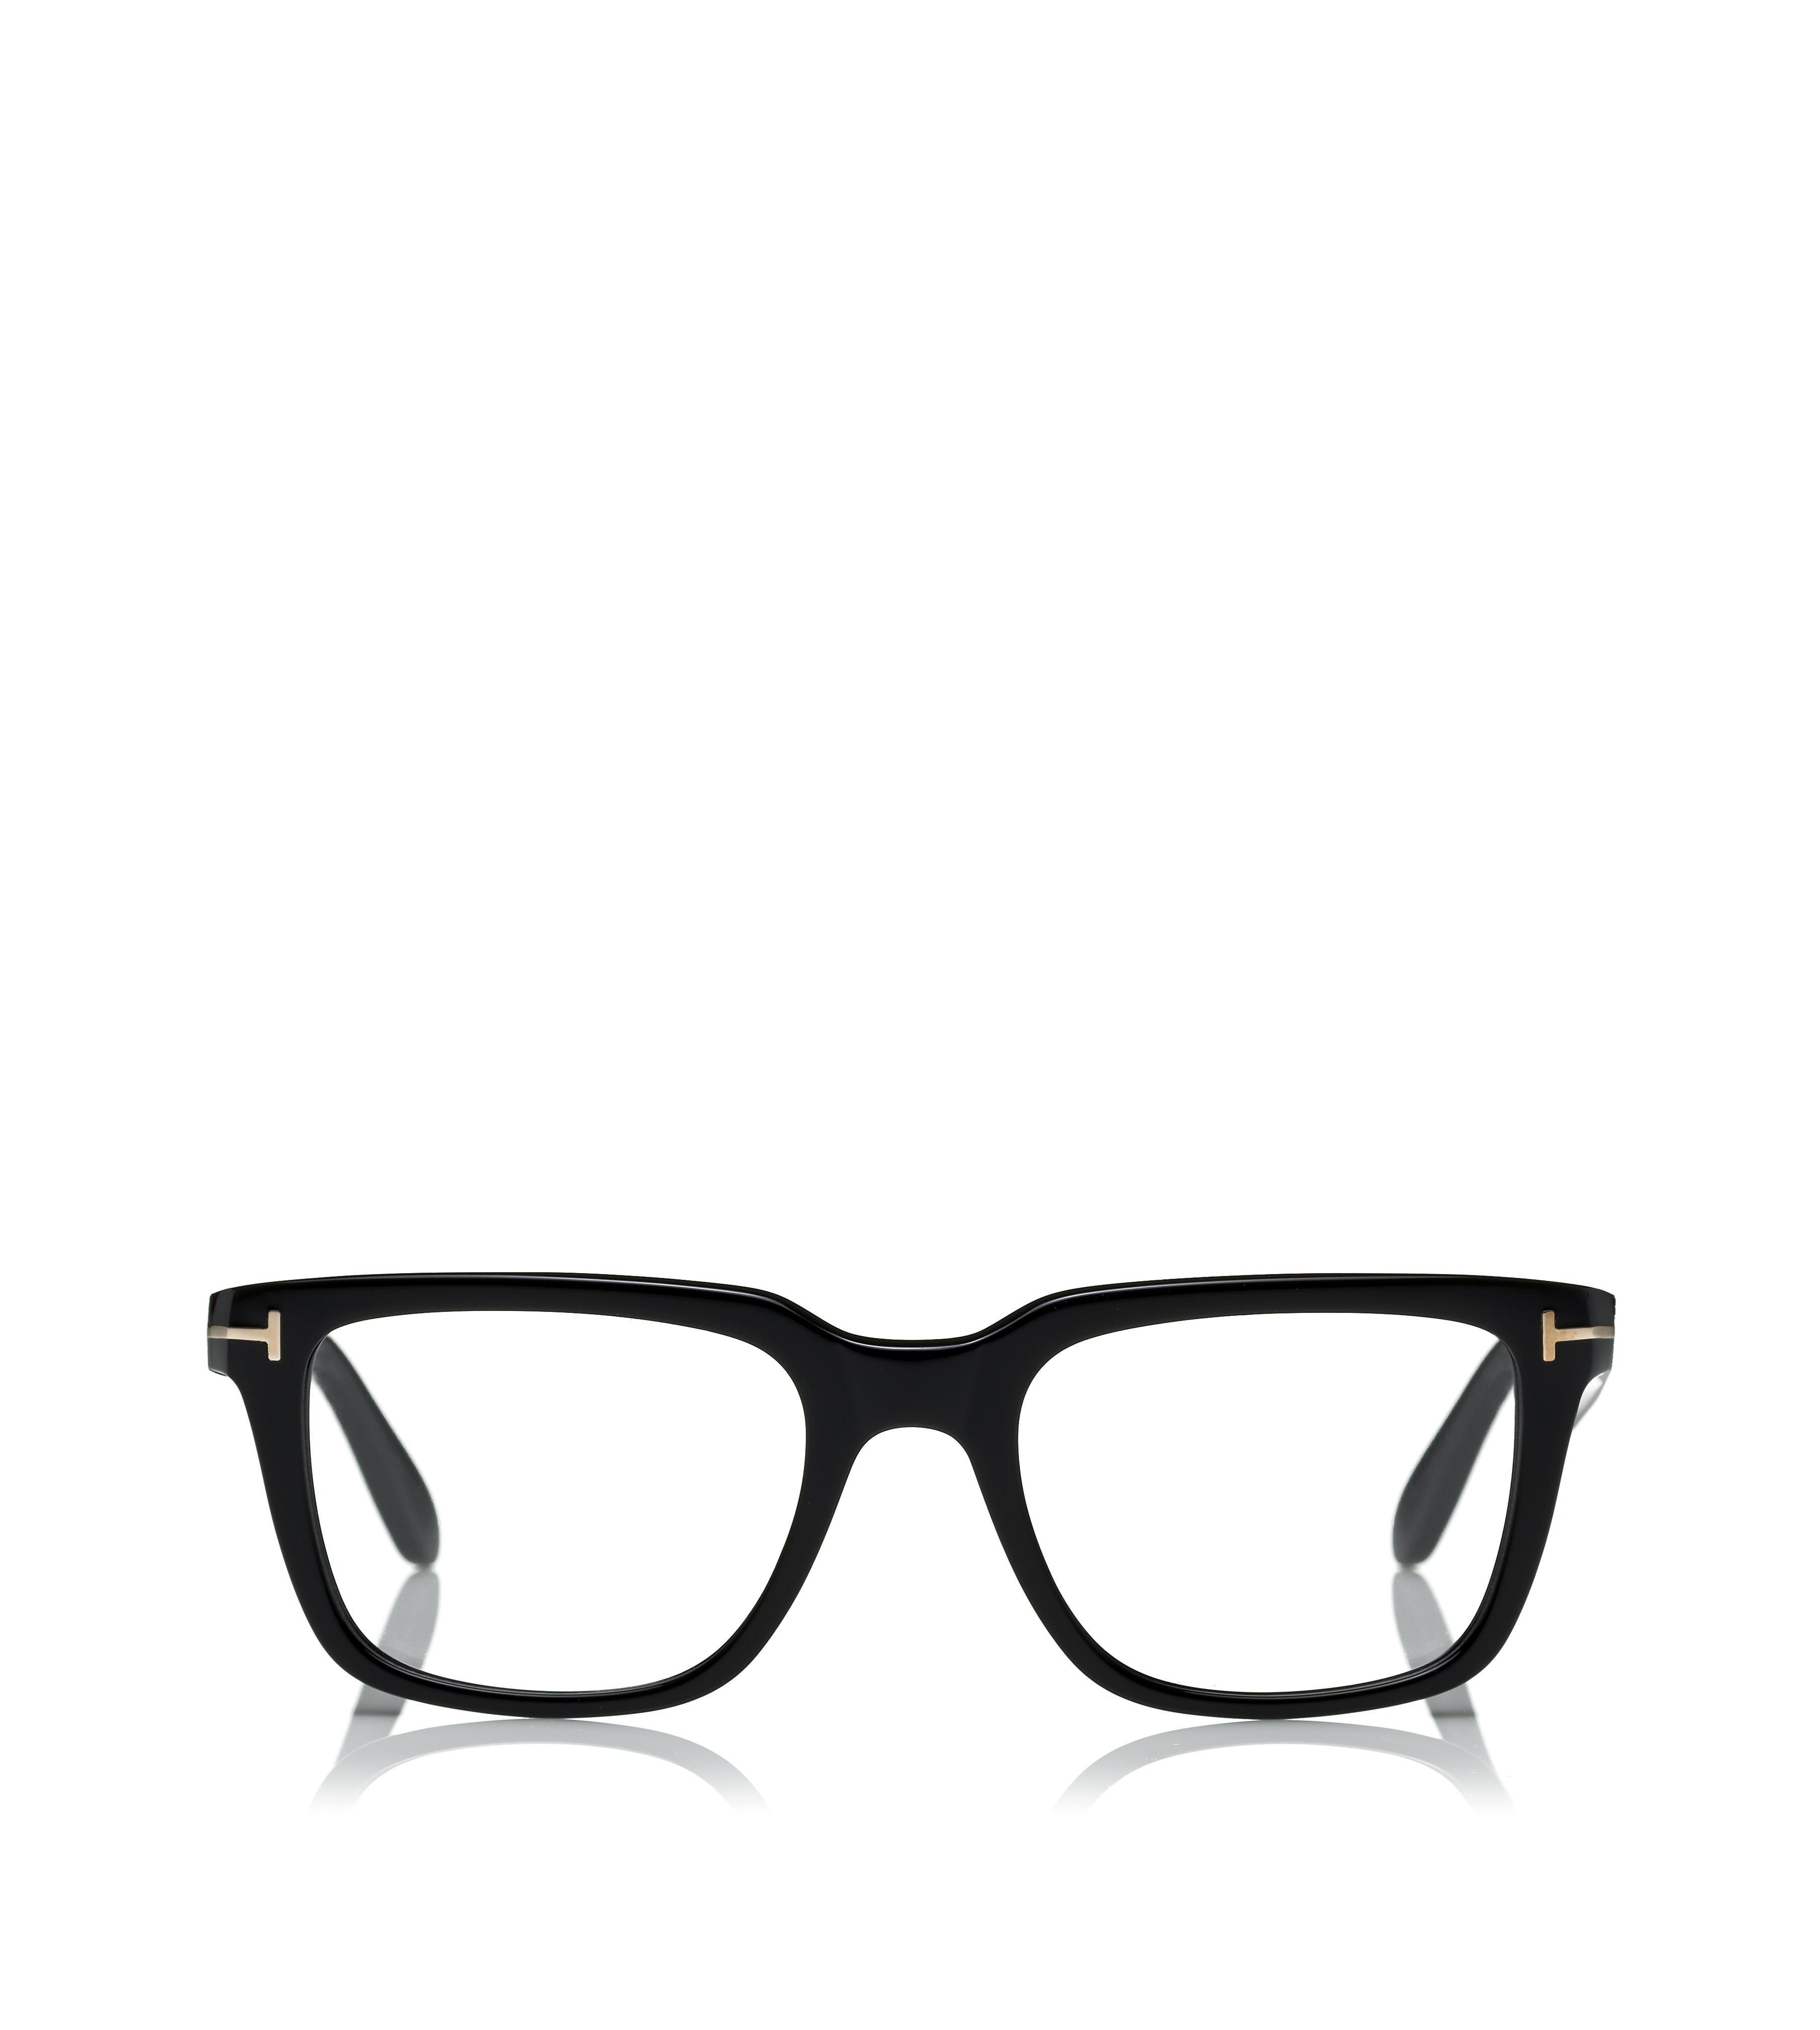 OPTICAL - Men's Eyewear | TomFord.com